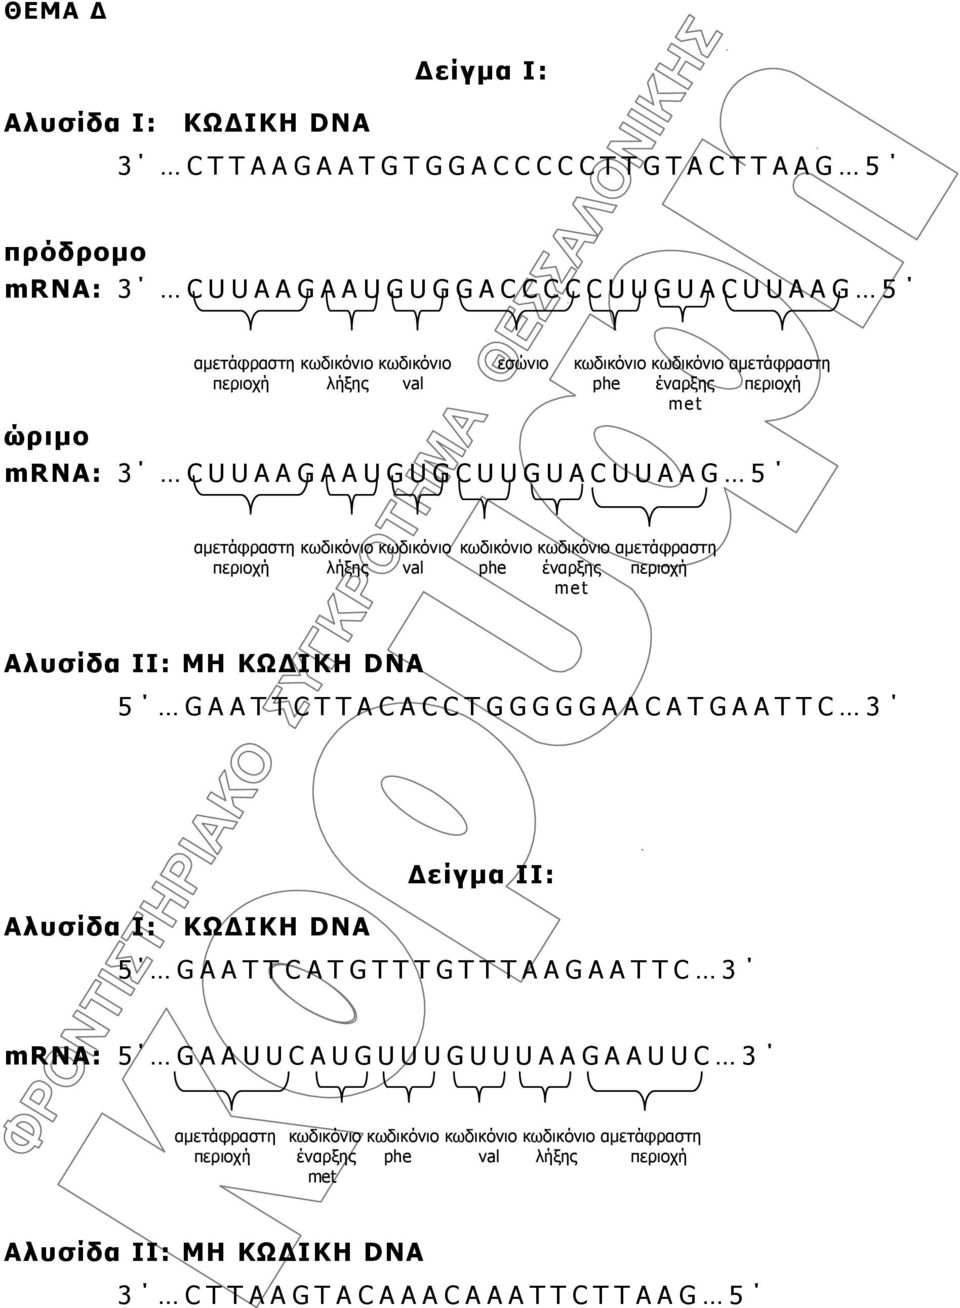 περιοχή λήξης val phe έναρξης περιοχή met Αλυσίδα ΙΙ: ΜΗ ΚΩΔΙΚΗ DNA 5 GAATTCTTACACCTGGGGGAACATGAATTC 3 Δείγμα II: Αλυσίδα Ι: ΚΩΔΙΚΗ DNA 5 GAATTCATGTTTGTTTAAGAATTC 3 mrna: 5